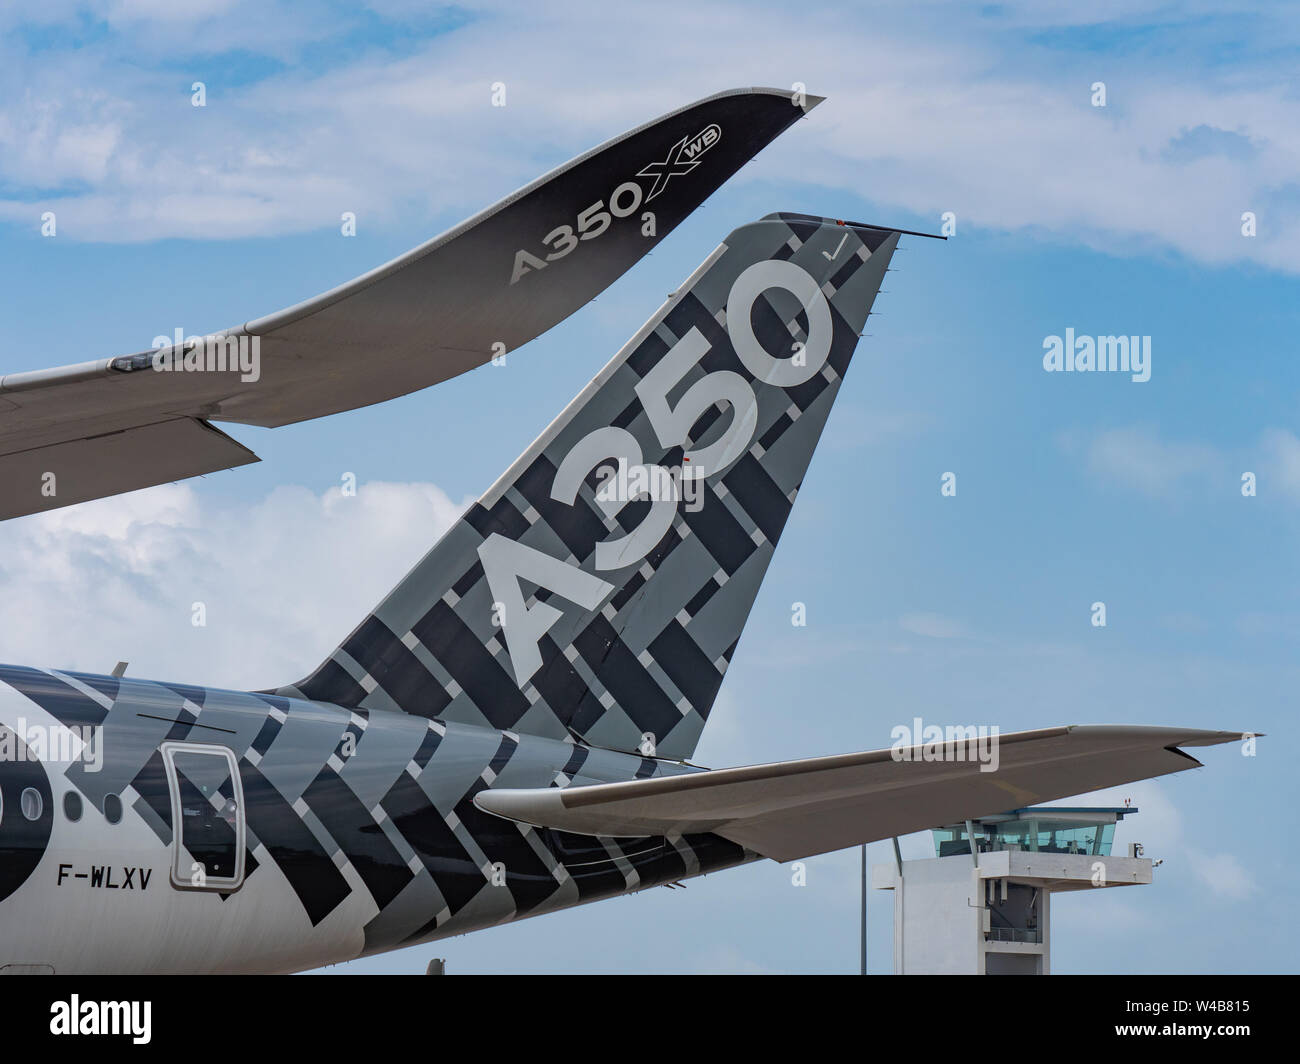 Singapur - Febrero 4, 2018: Winglet y tailplane de Airbus A350-1000 XWB en fábrica de Airbus durante la librea Singapur Airshow en exposiciones Changi Cen Foto de stock